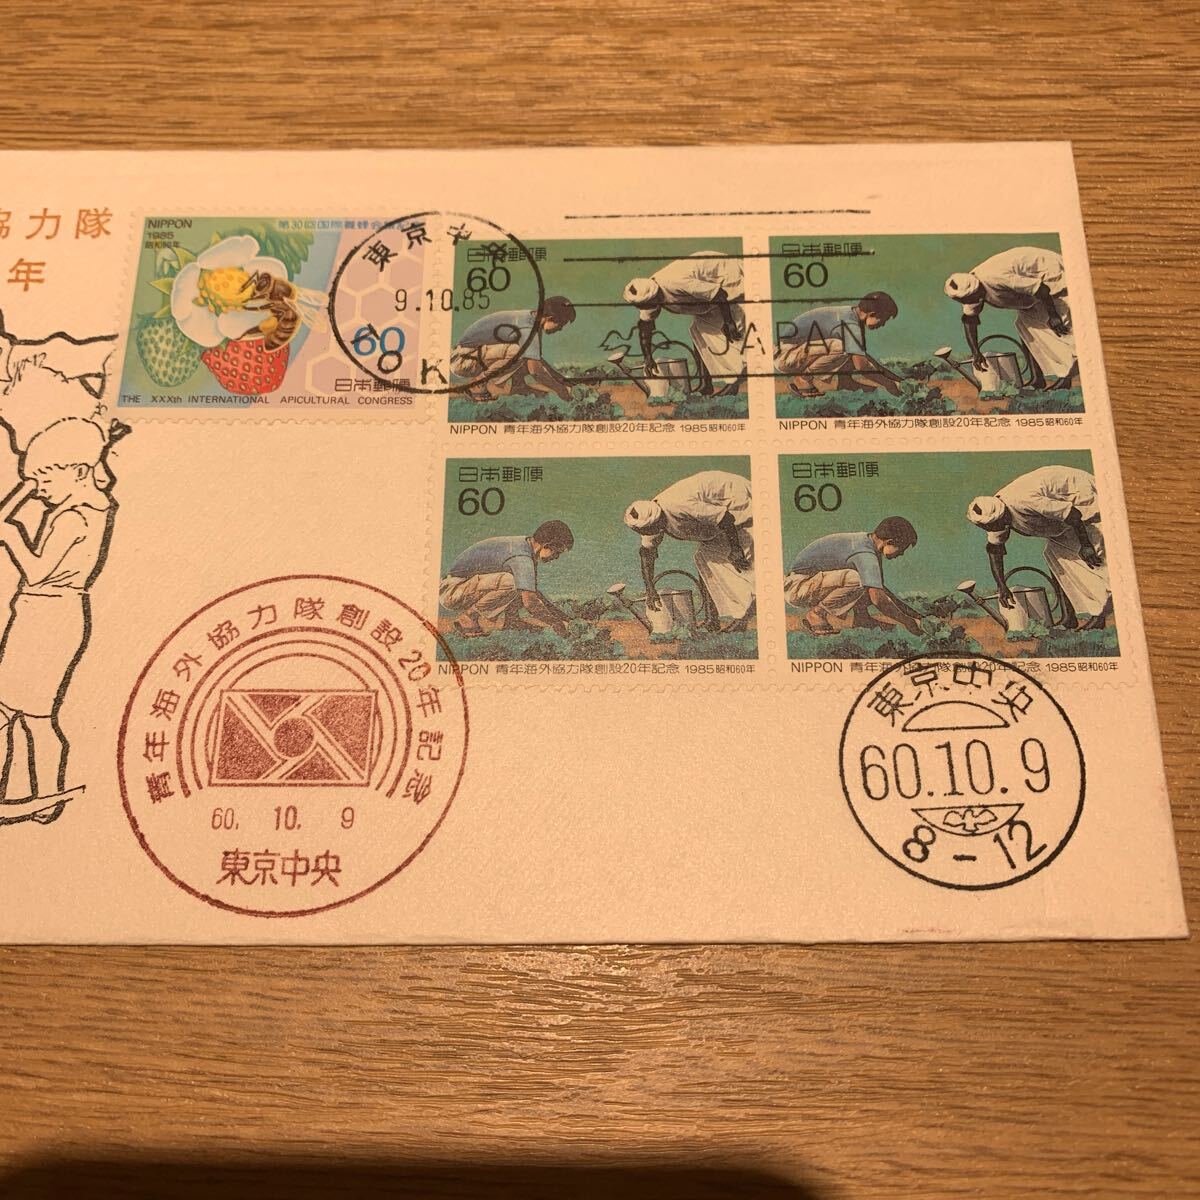 初日カバー 青年海外協力隊 創設20年記念郵便切手 昭和60年発行 日本風景社版の画像2